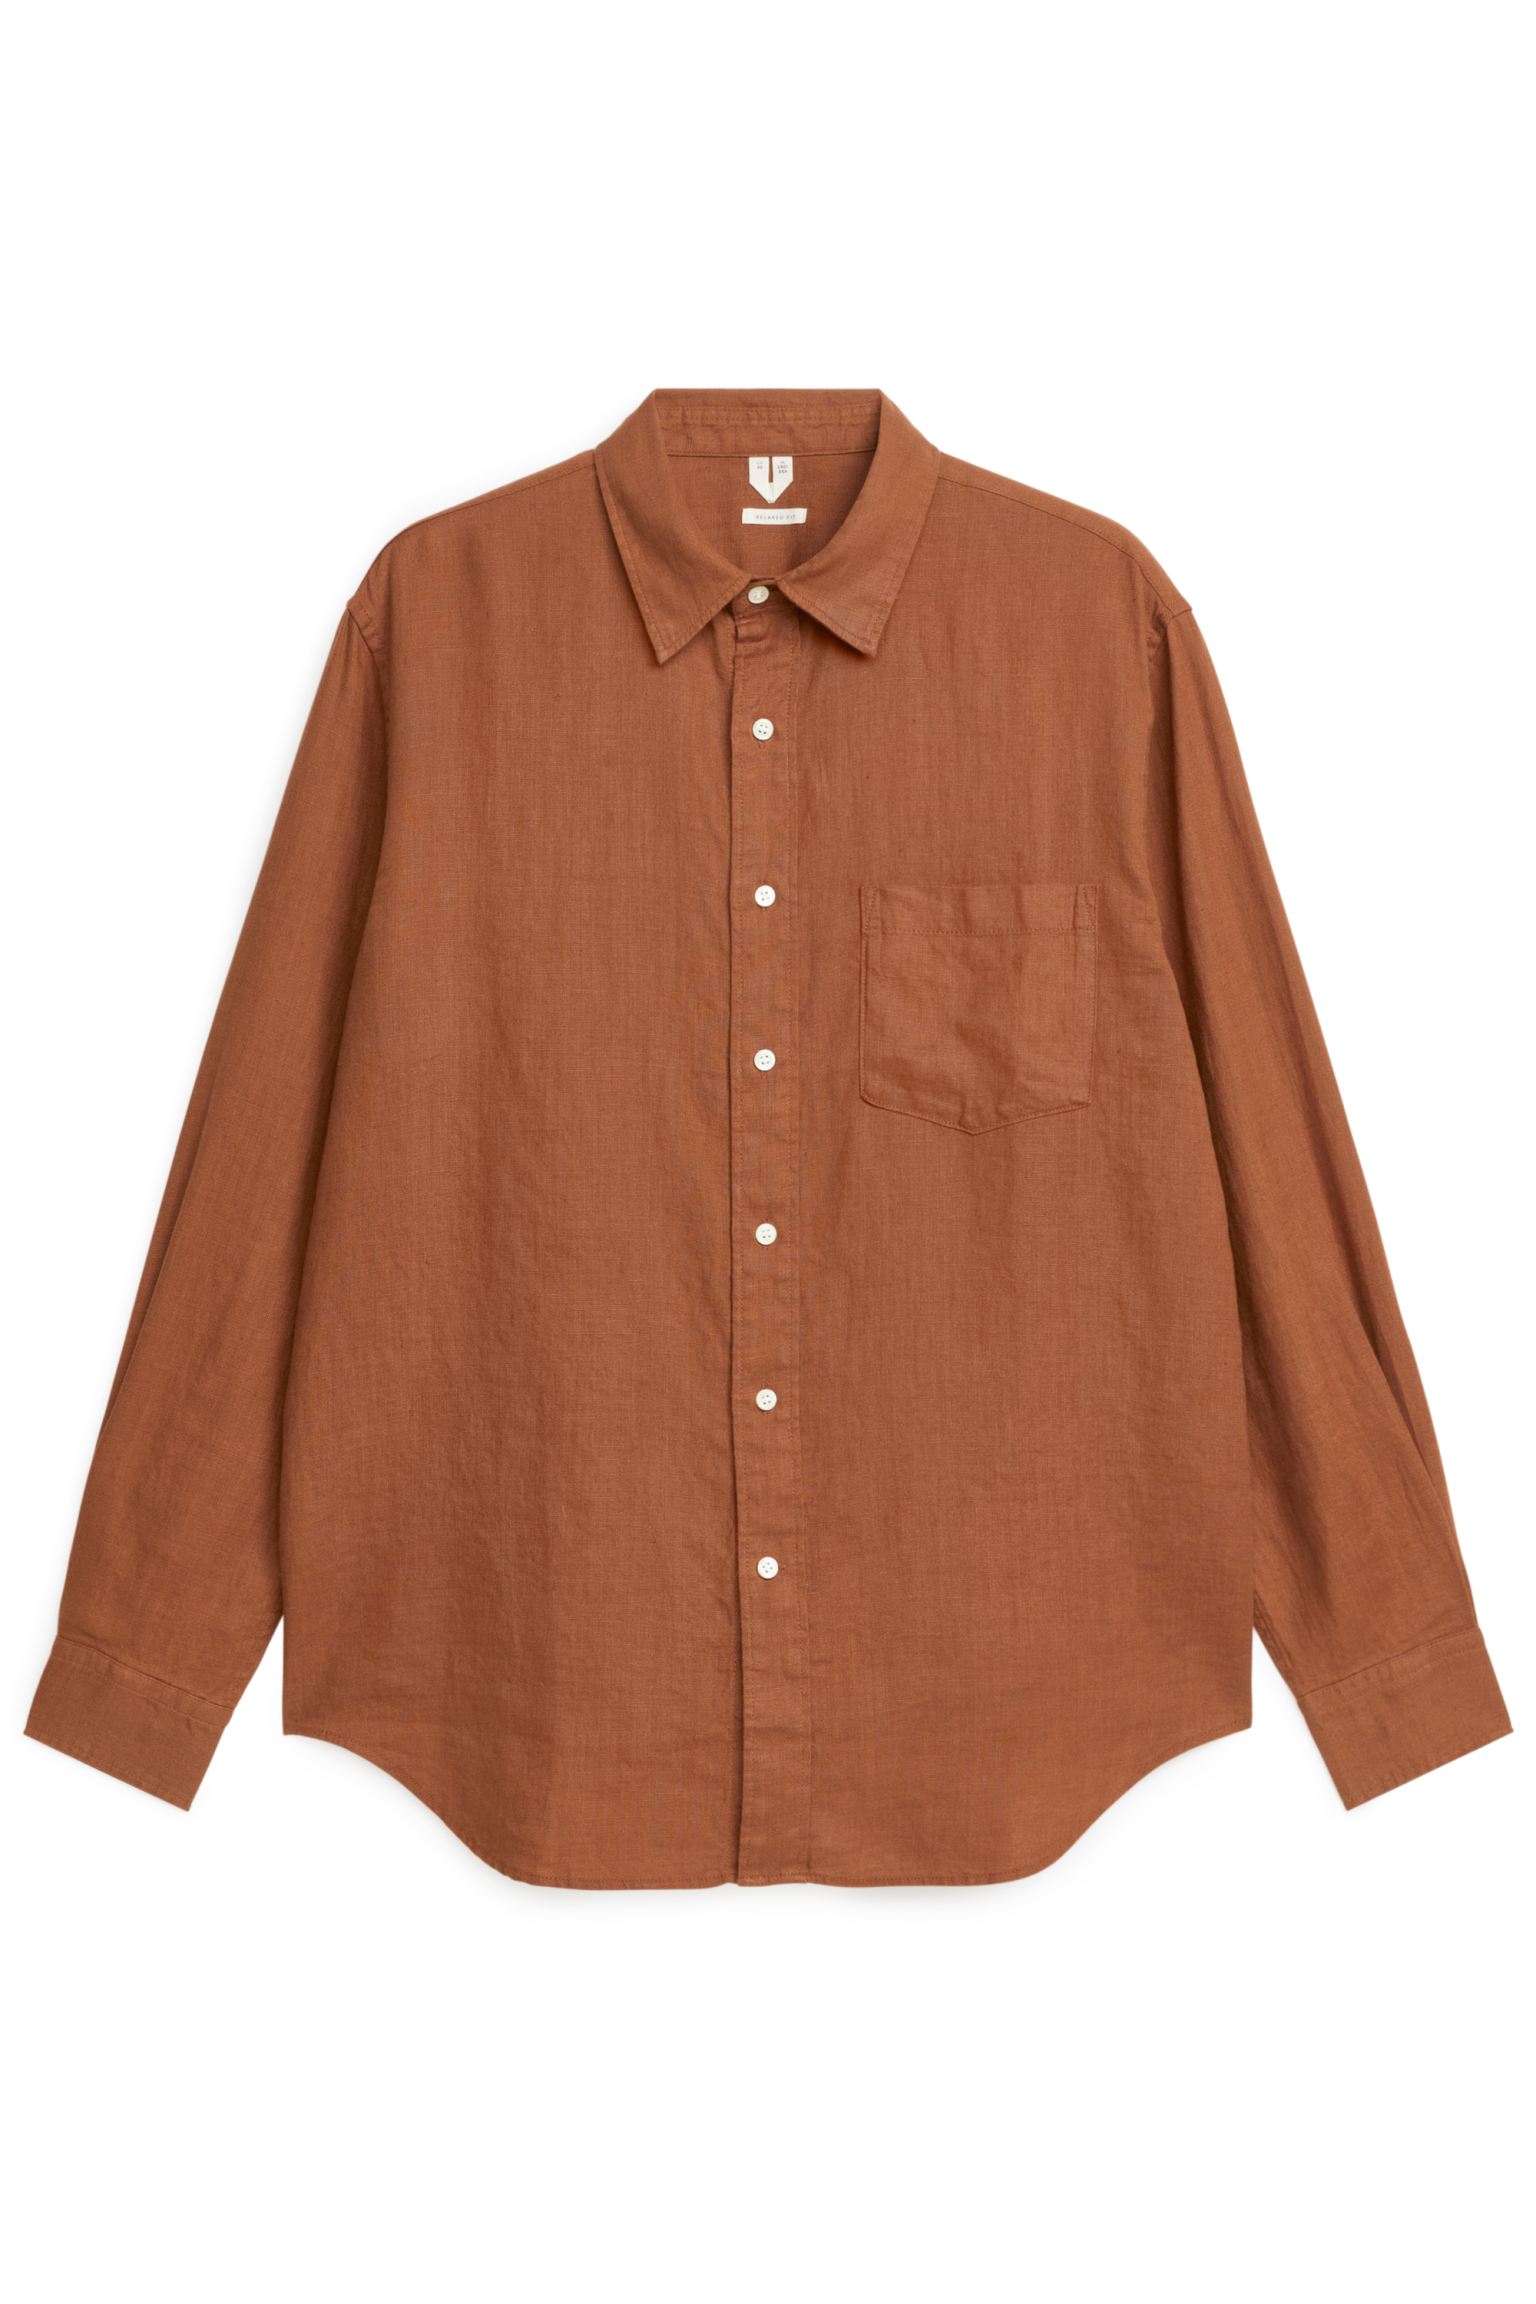 Рубашка мужская ARKET 1056472006 коричневая 54 RU (доставка из-за рубежа)